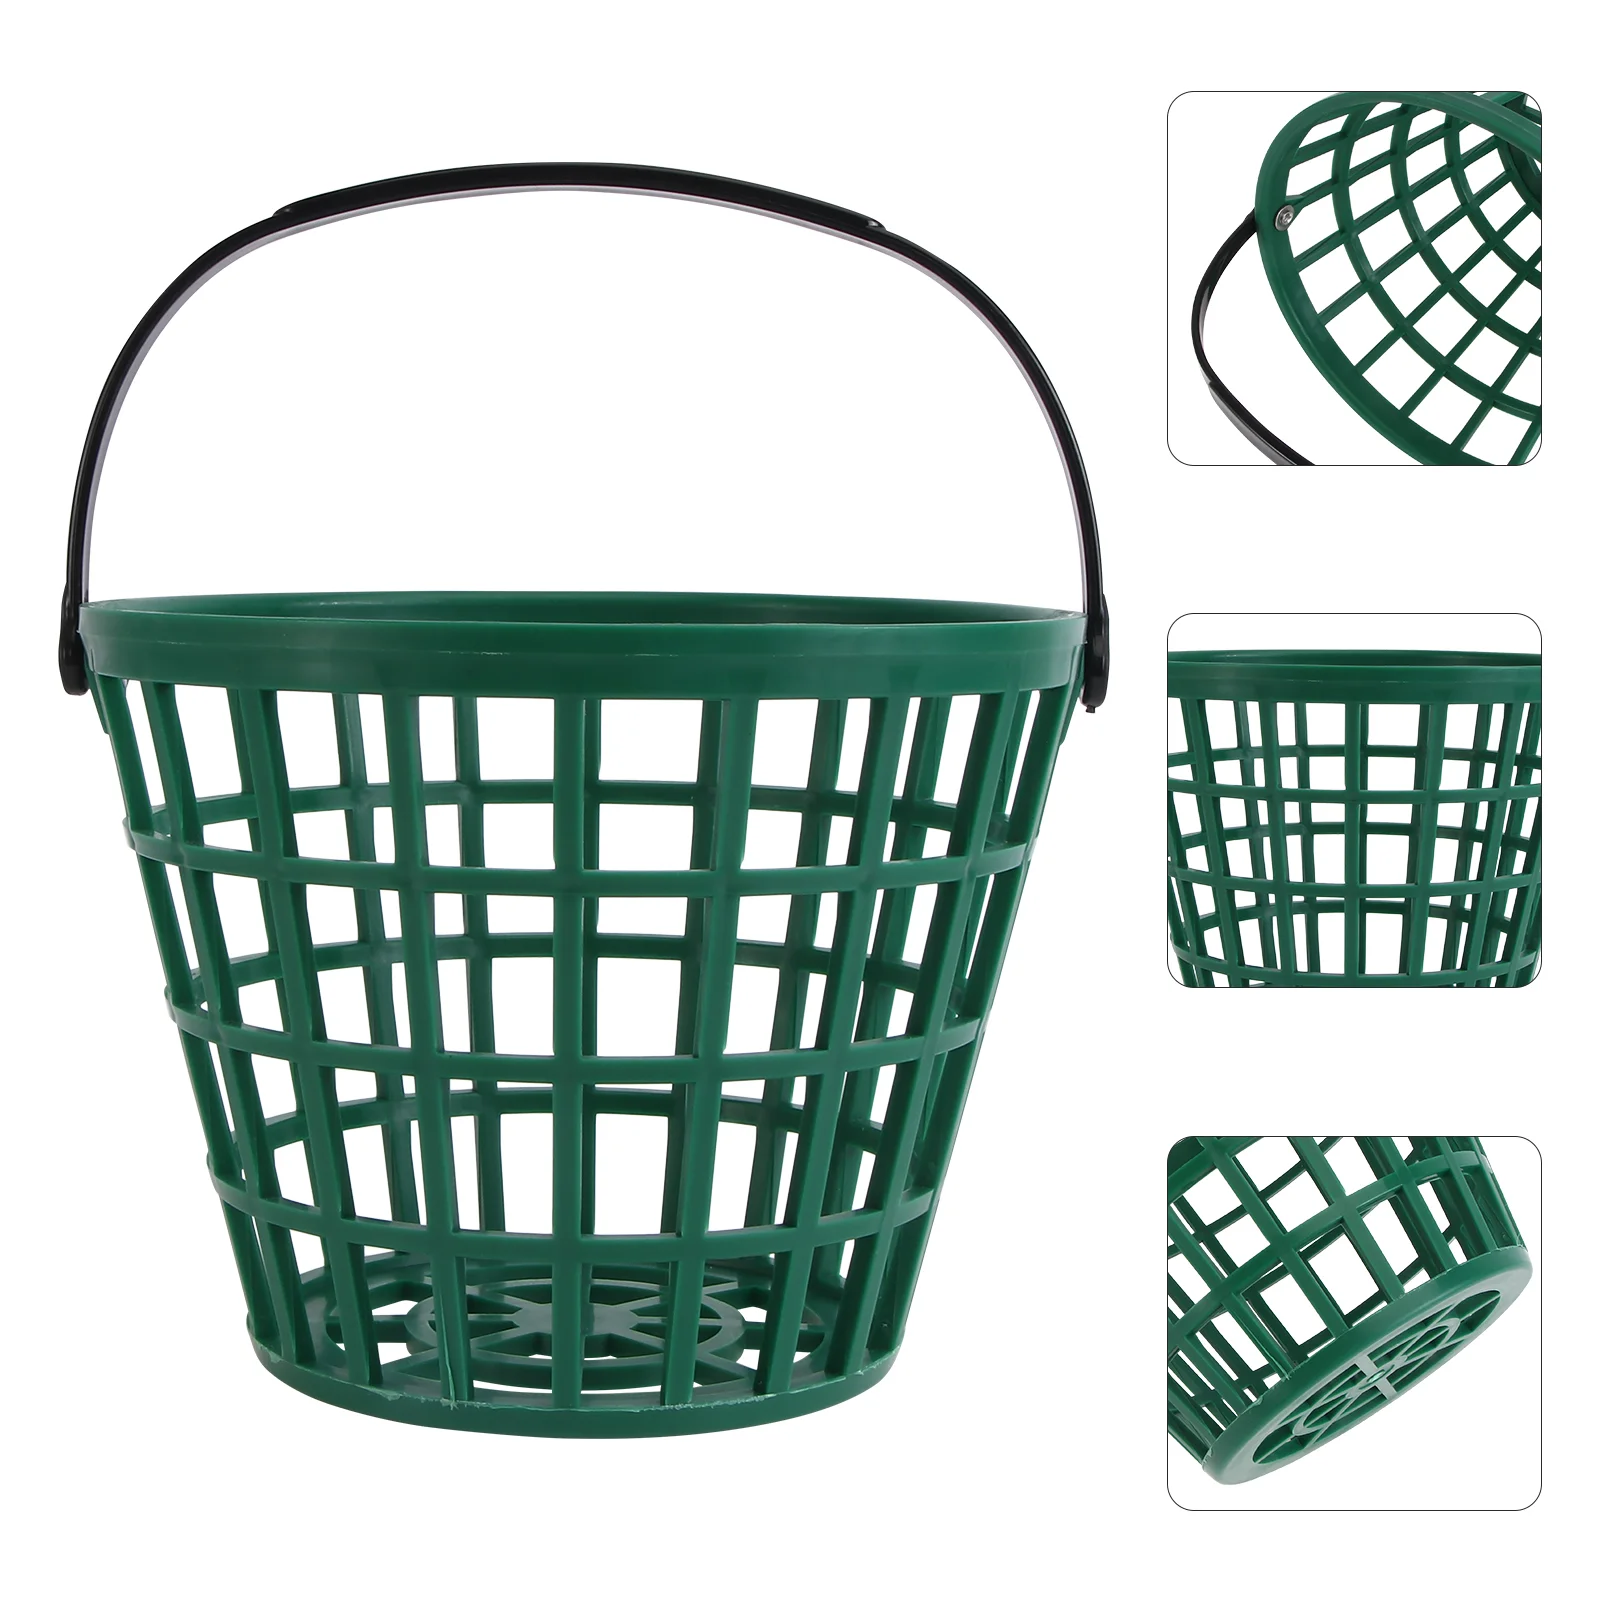 

Ball Carrying Bucket Range Buckets Basket Golf Balls Outdoor Golfball Hoop Stadium Accessories Man